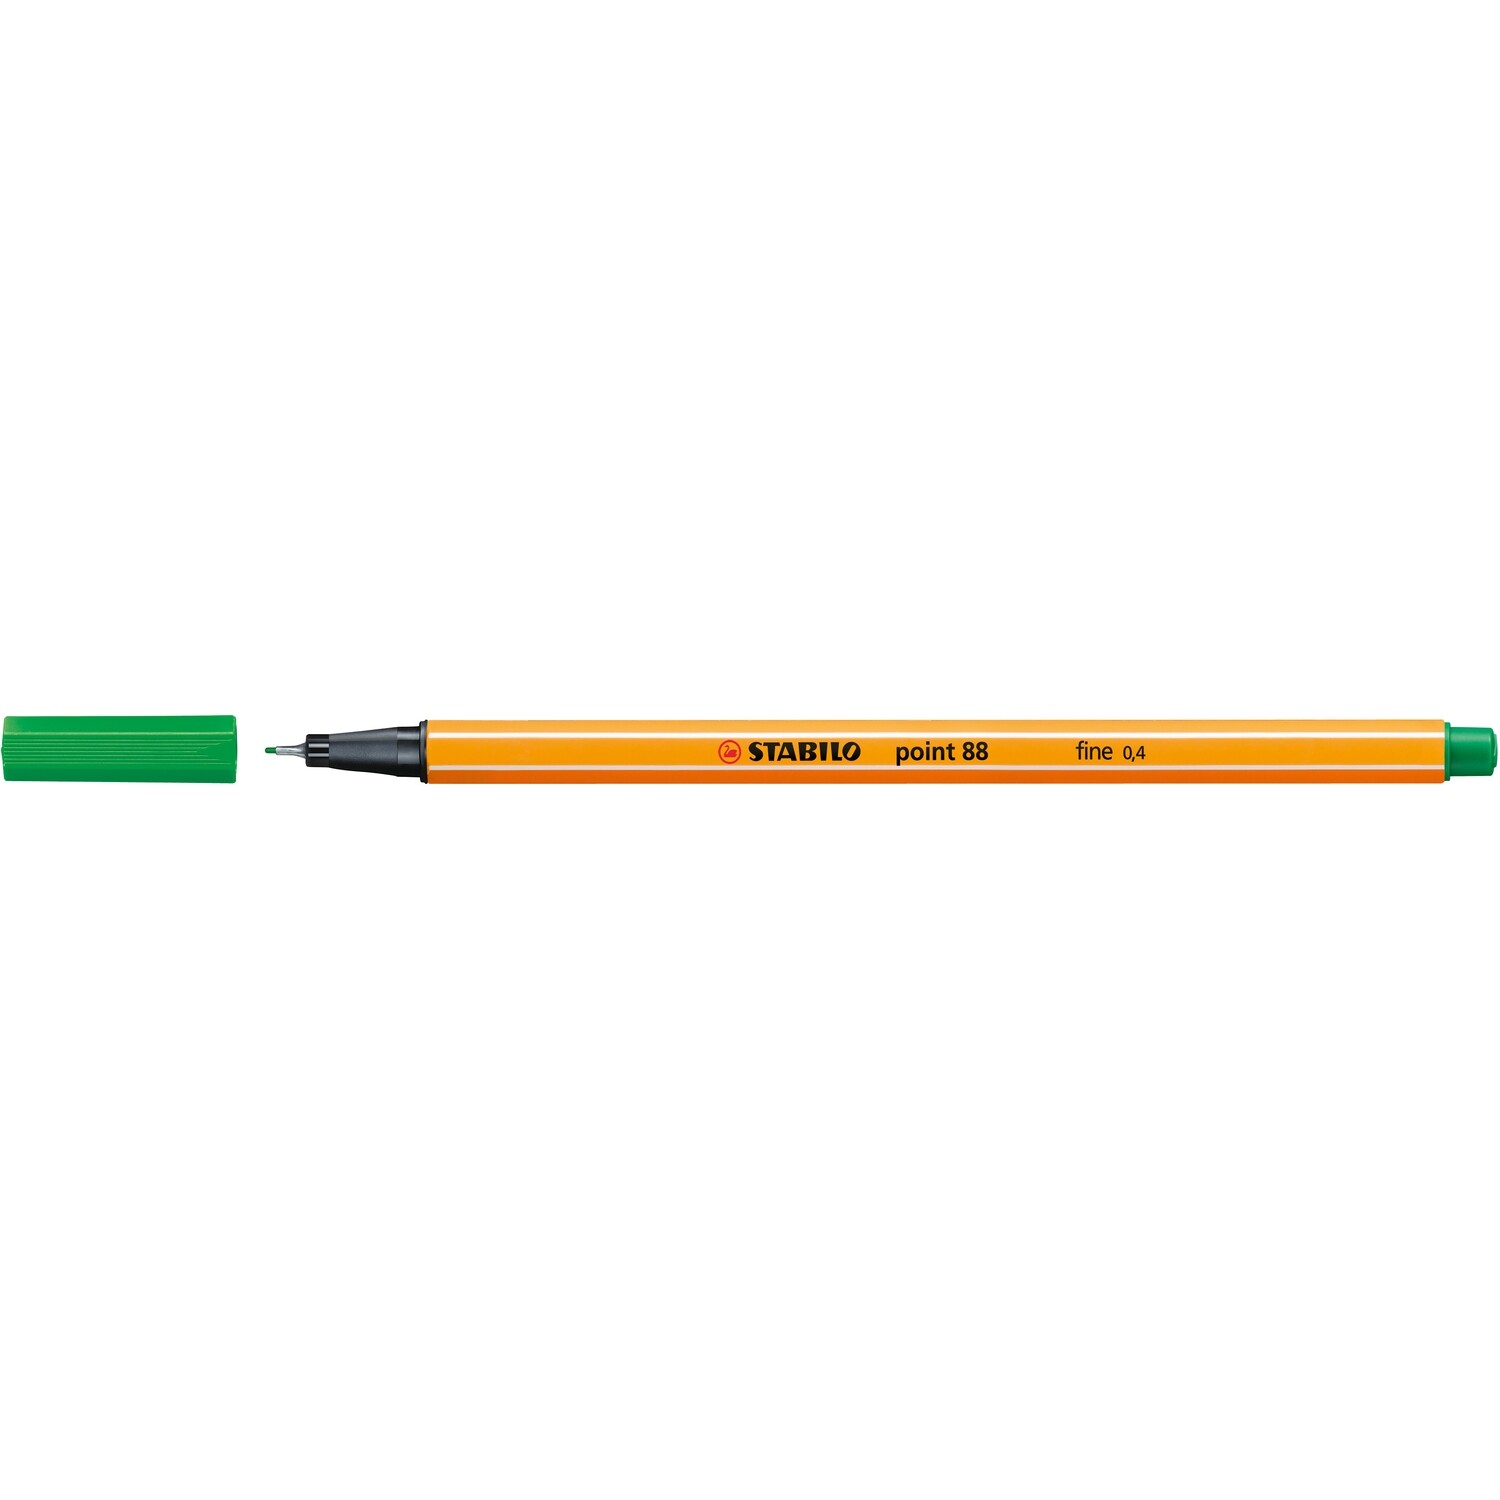 Pen, Fineliner, Point 88 Green, 0.4 Mm, Single